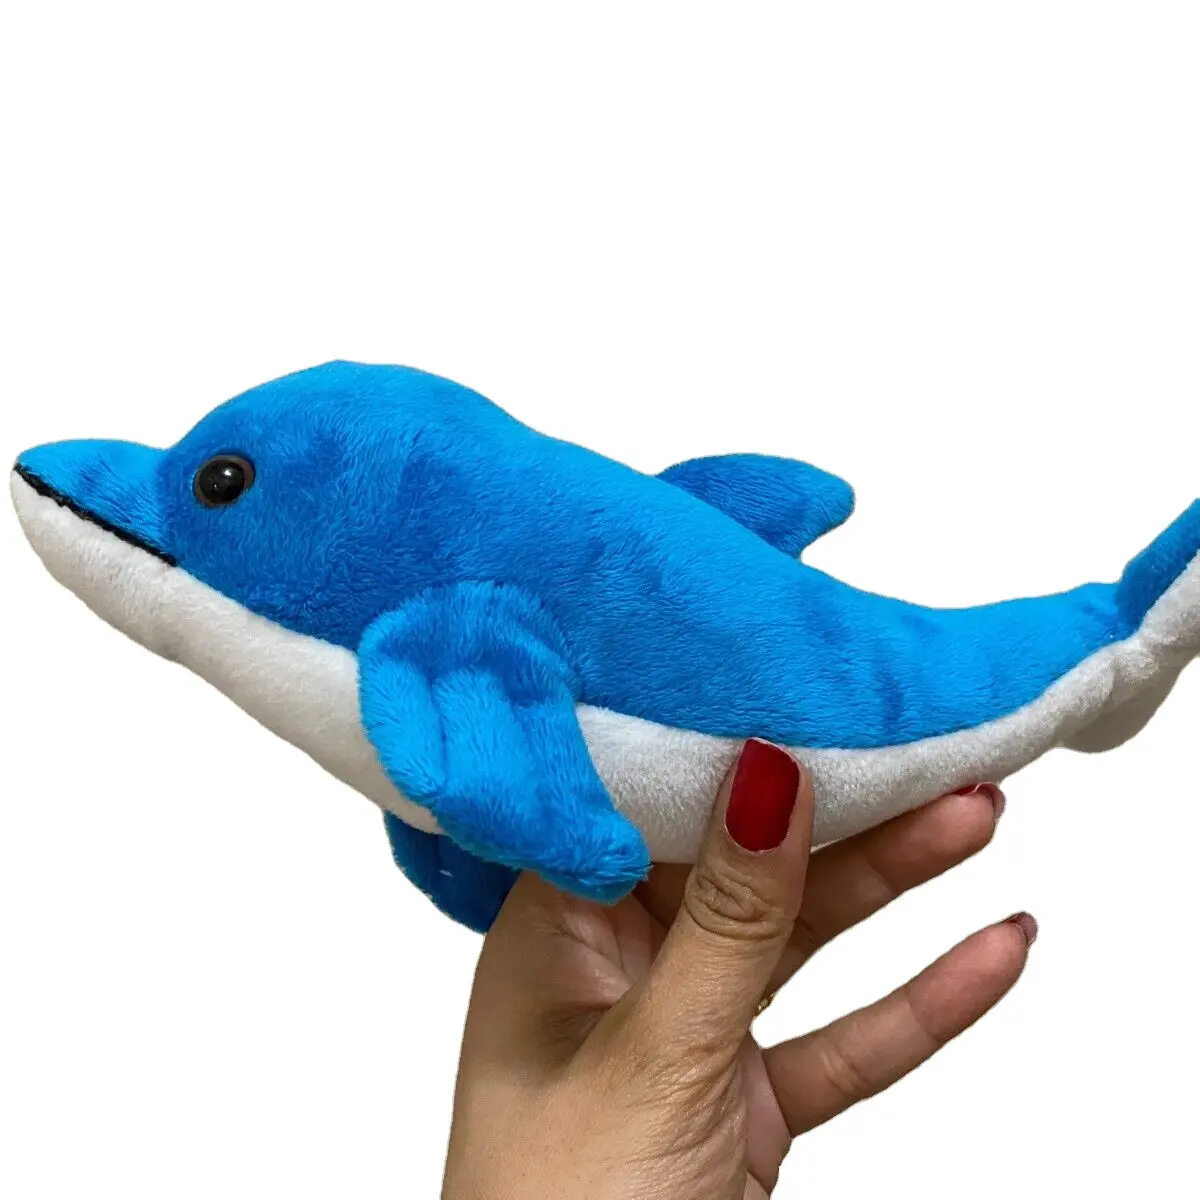 ของเล่นตุ๊กตาผ้านุ่มรูปปลาวาฬสีน้ำเงินผลิตภัณฑ์ต่ำกว่า1ดอลลาร์สั่งทำใหม่